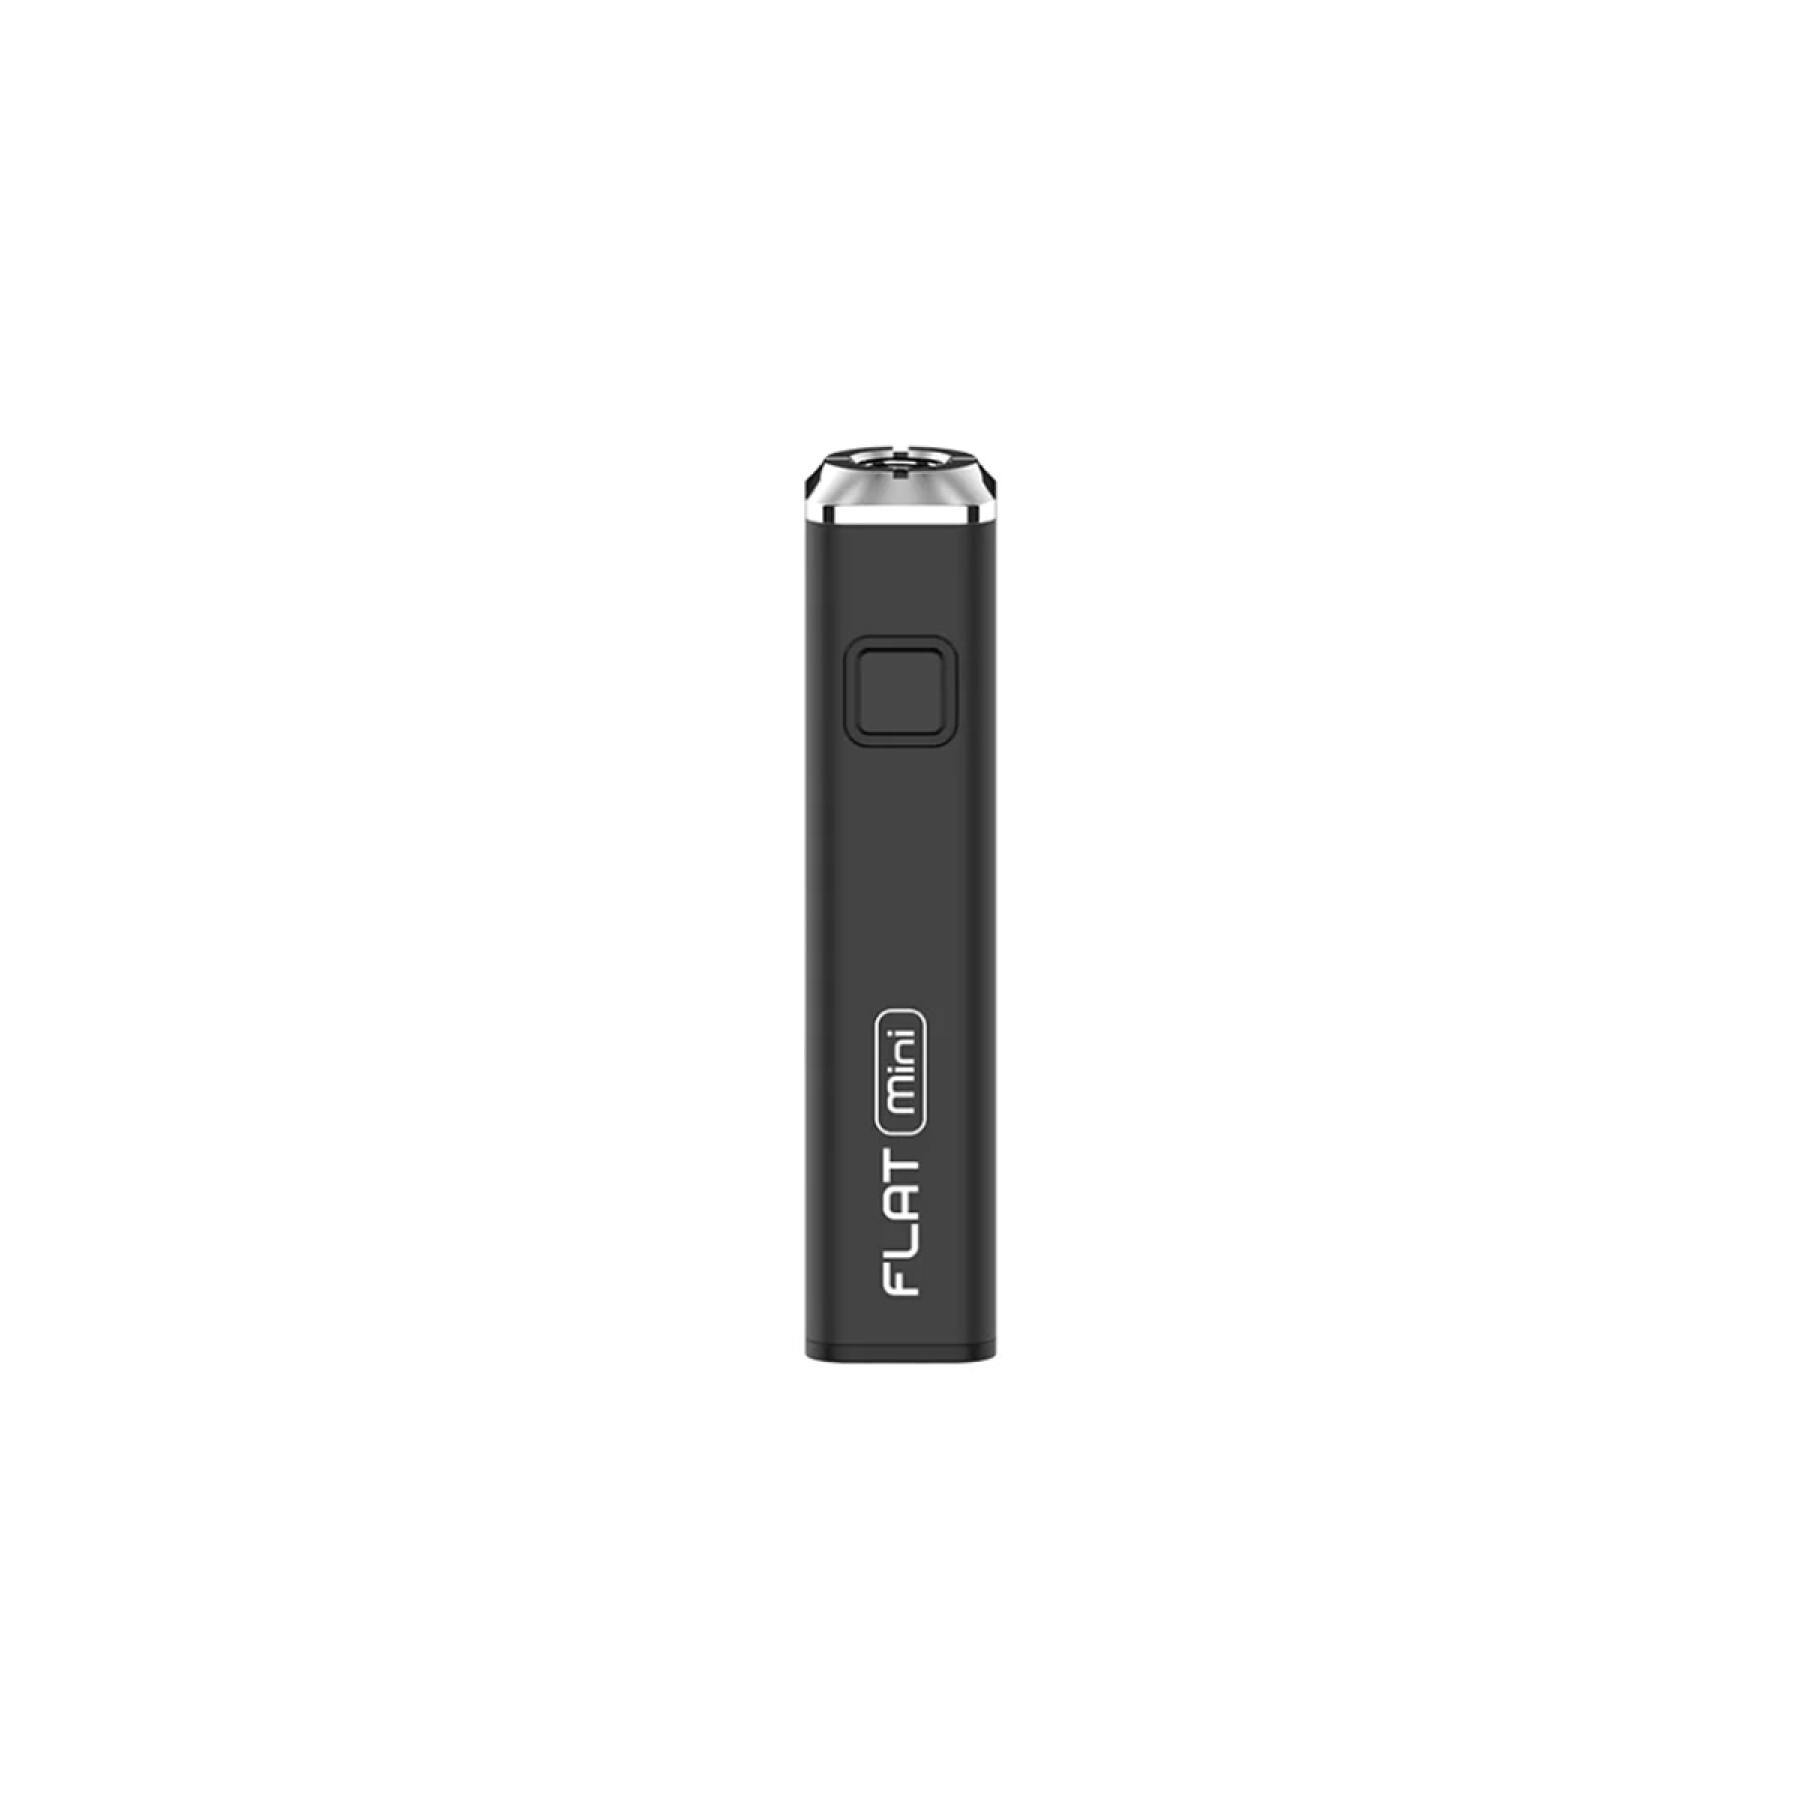 Flat Mini 510 Vape Battery | Black